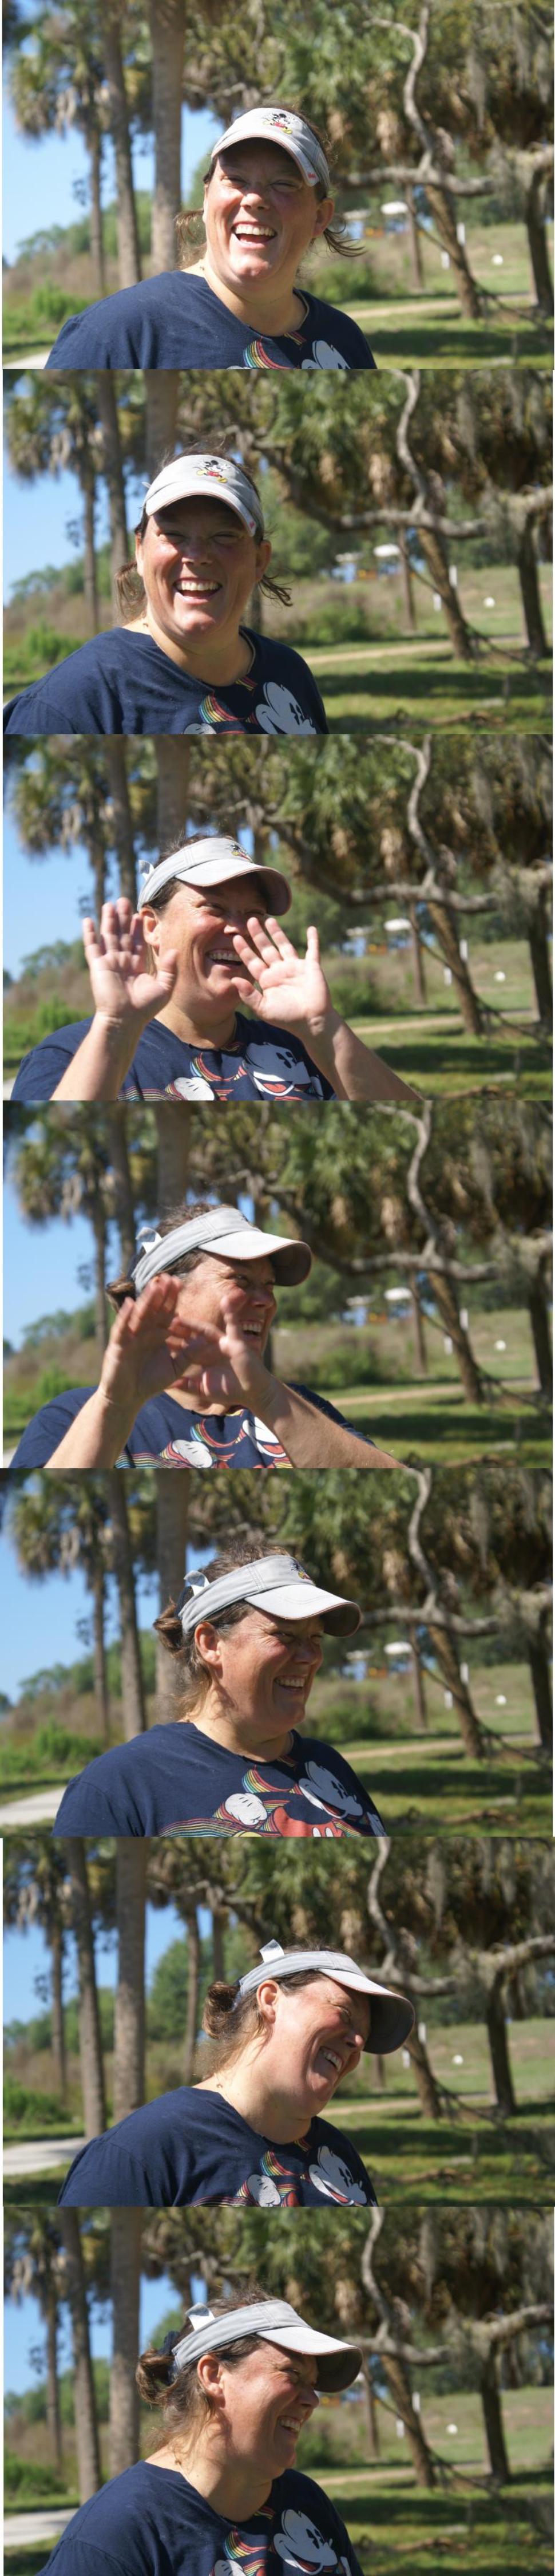 Meet the Instructor: St. Petersburg, Florida, Tina Snook